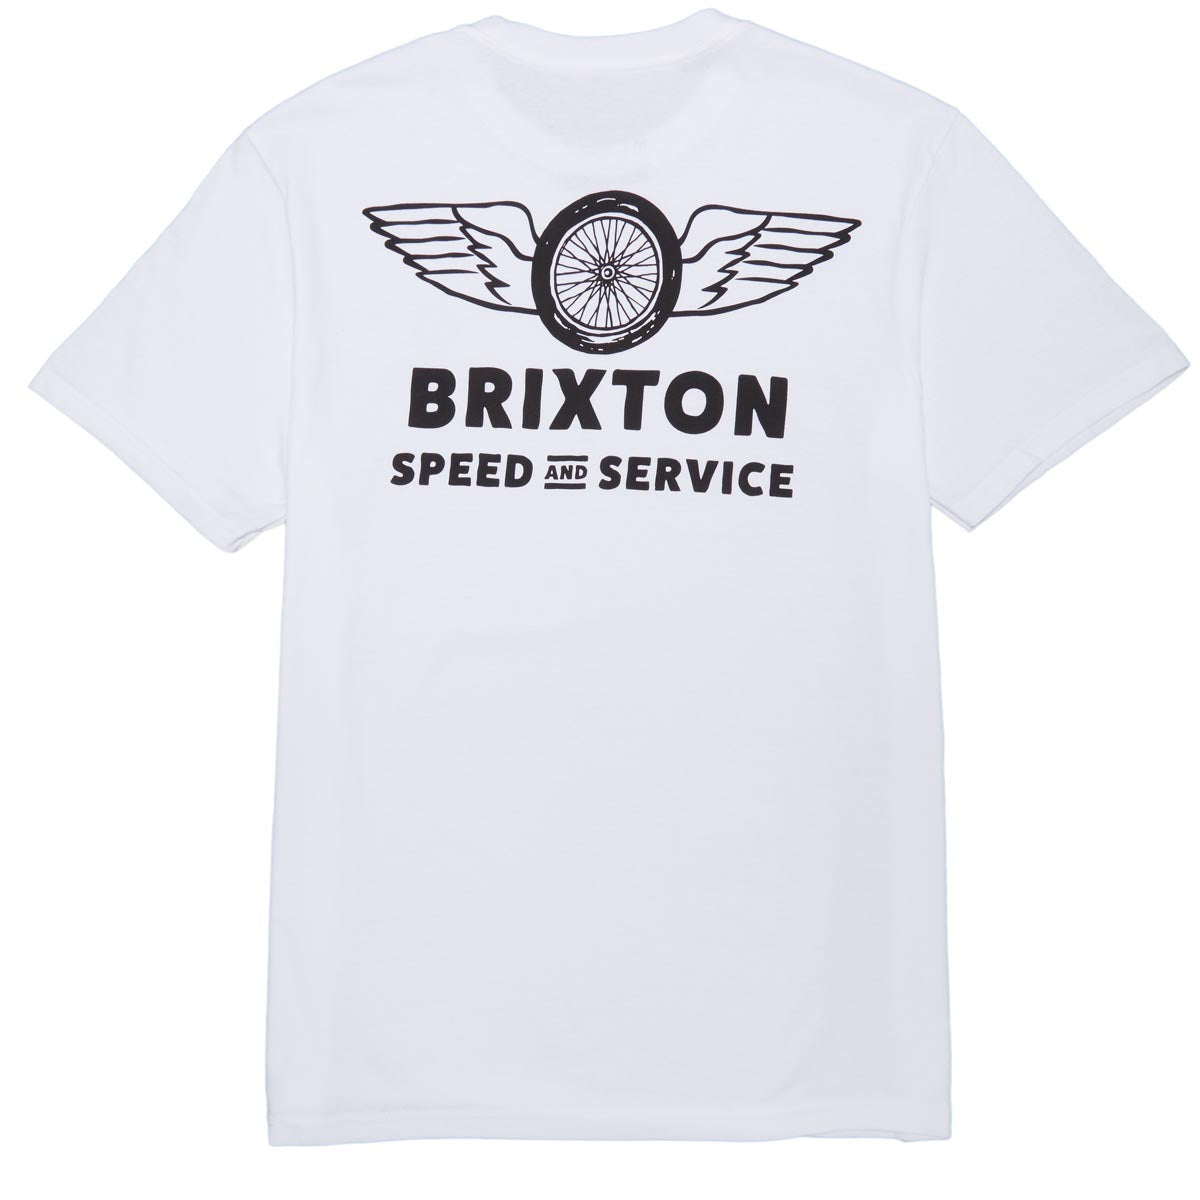 Brixton Spoke T-Shirt - White image 1